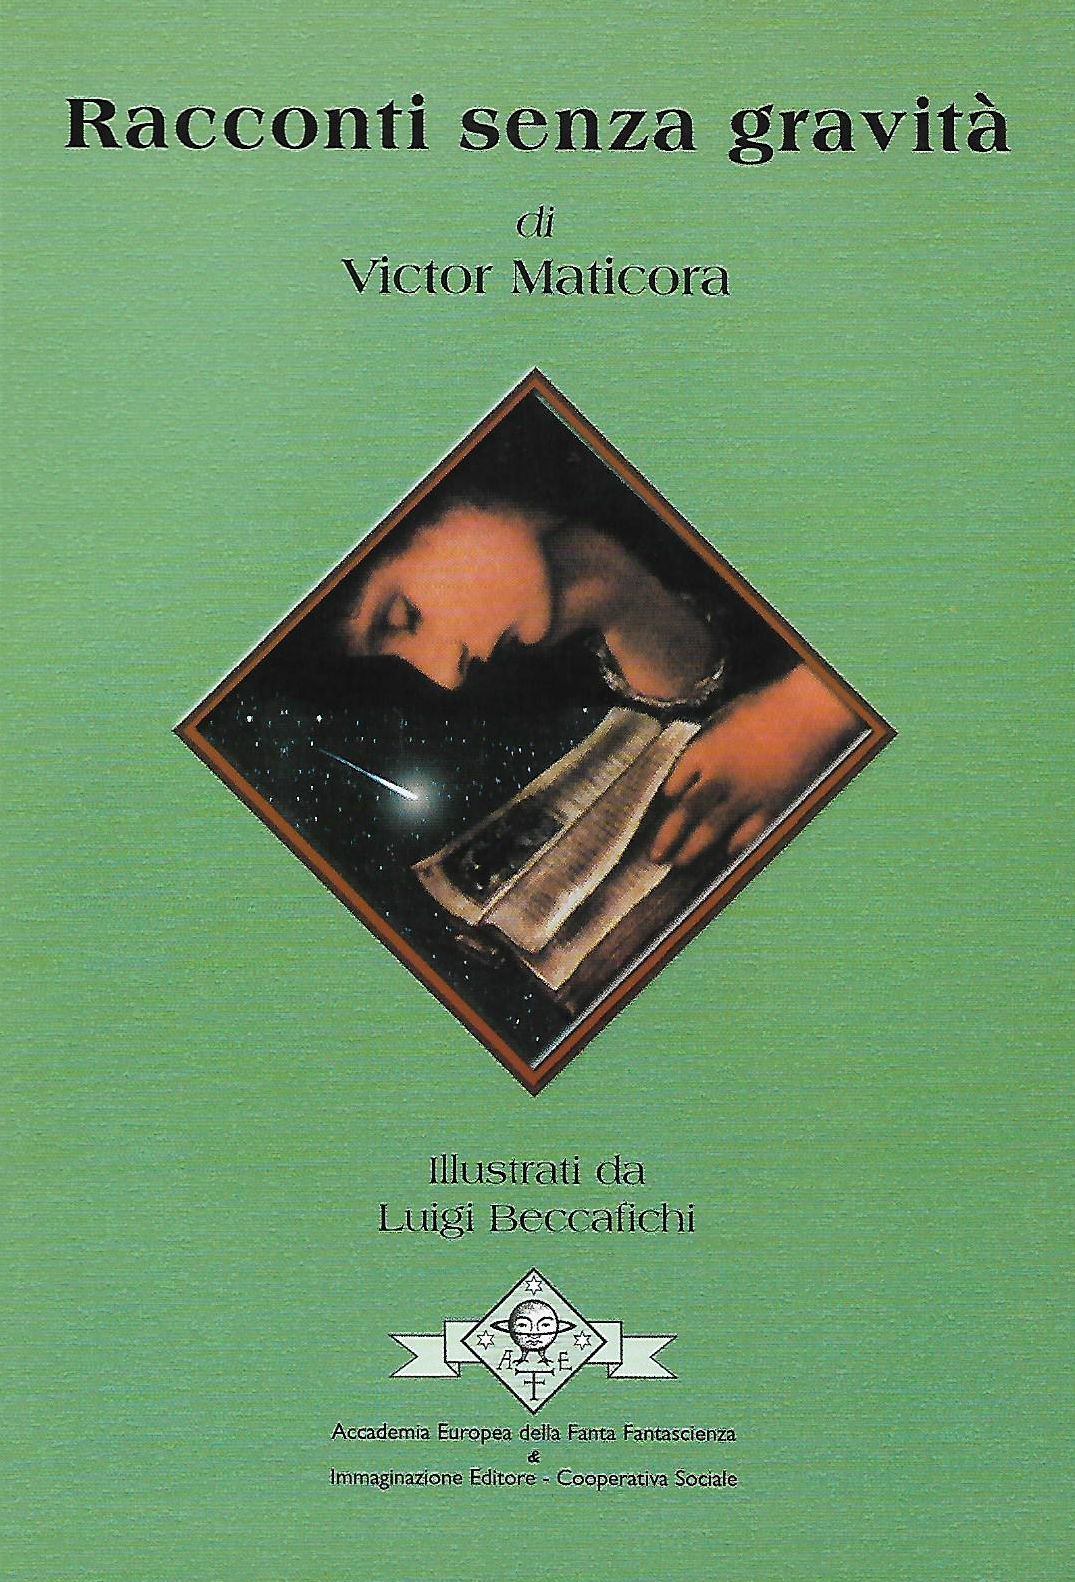 Copertina libro Victor Maticora Racconti senza gravità